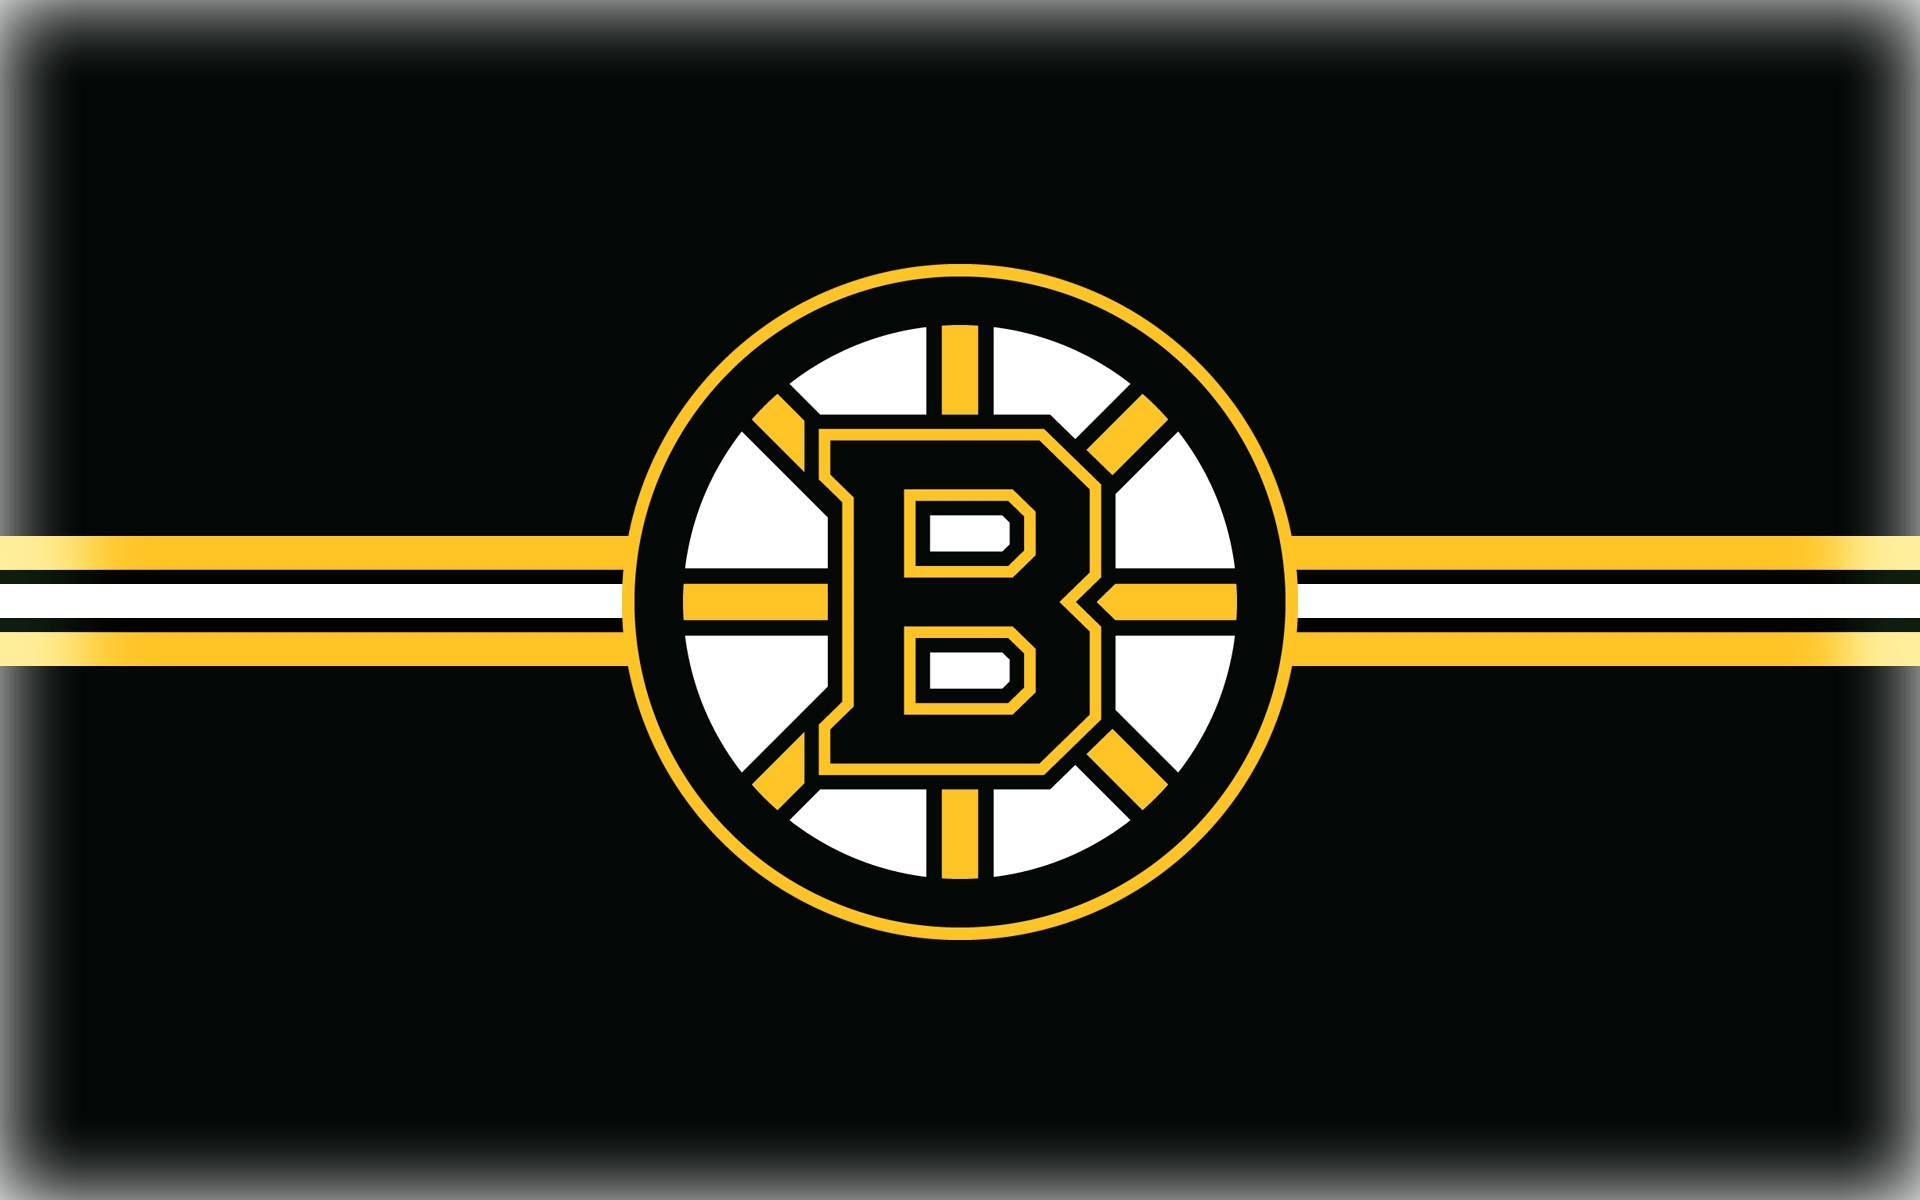 Exibacom Orgulho O Logotipo Do Boston Bruins Em Sua Tela De Computador Ou Celular. Papel de Parede